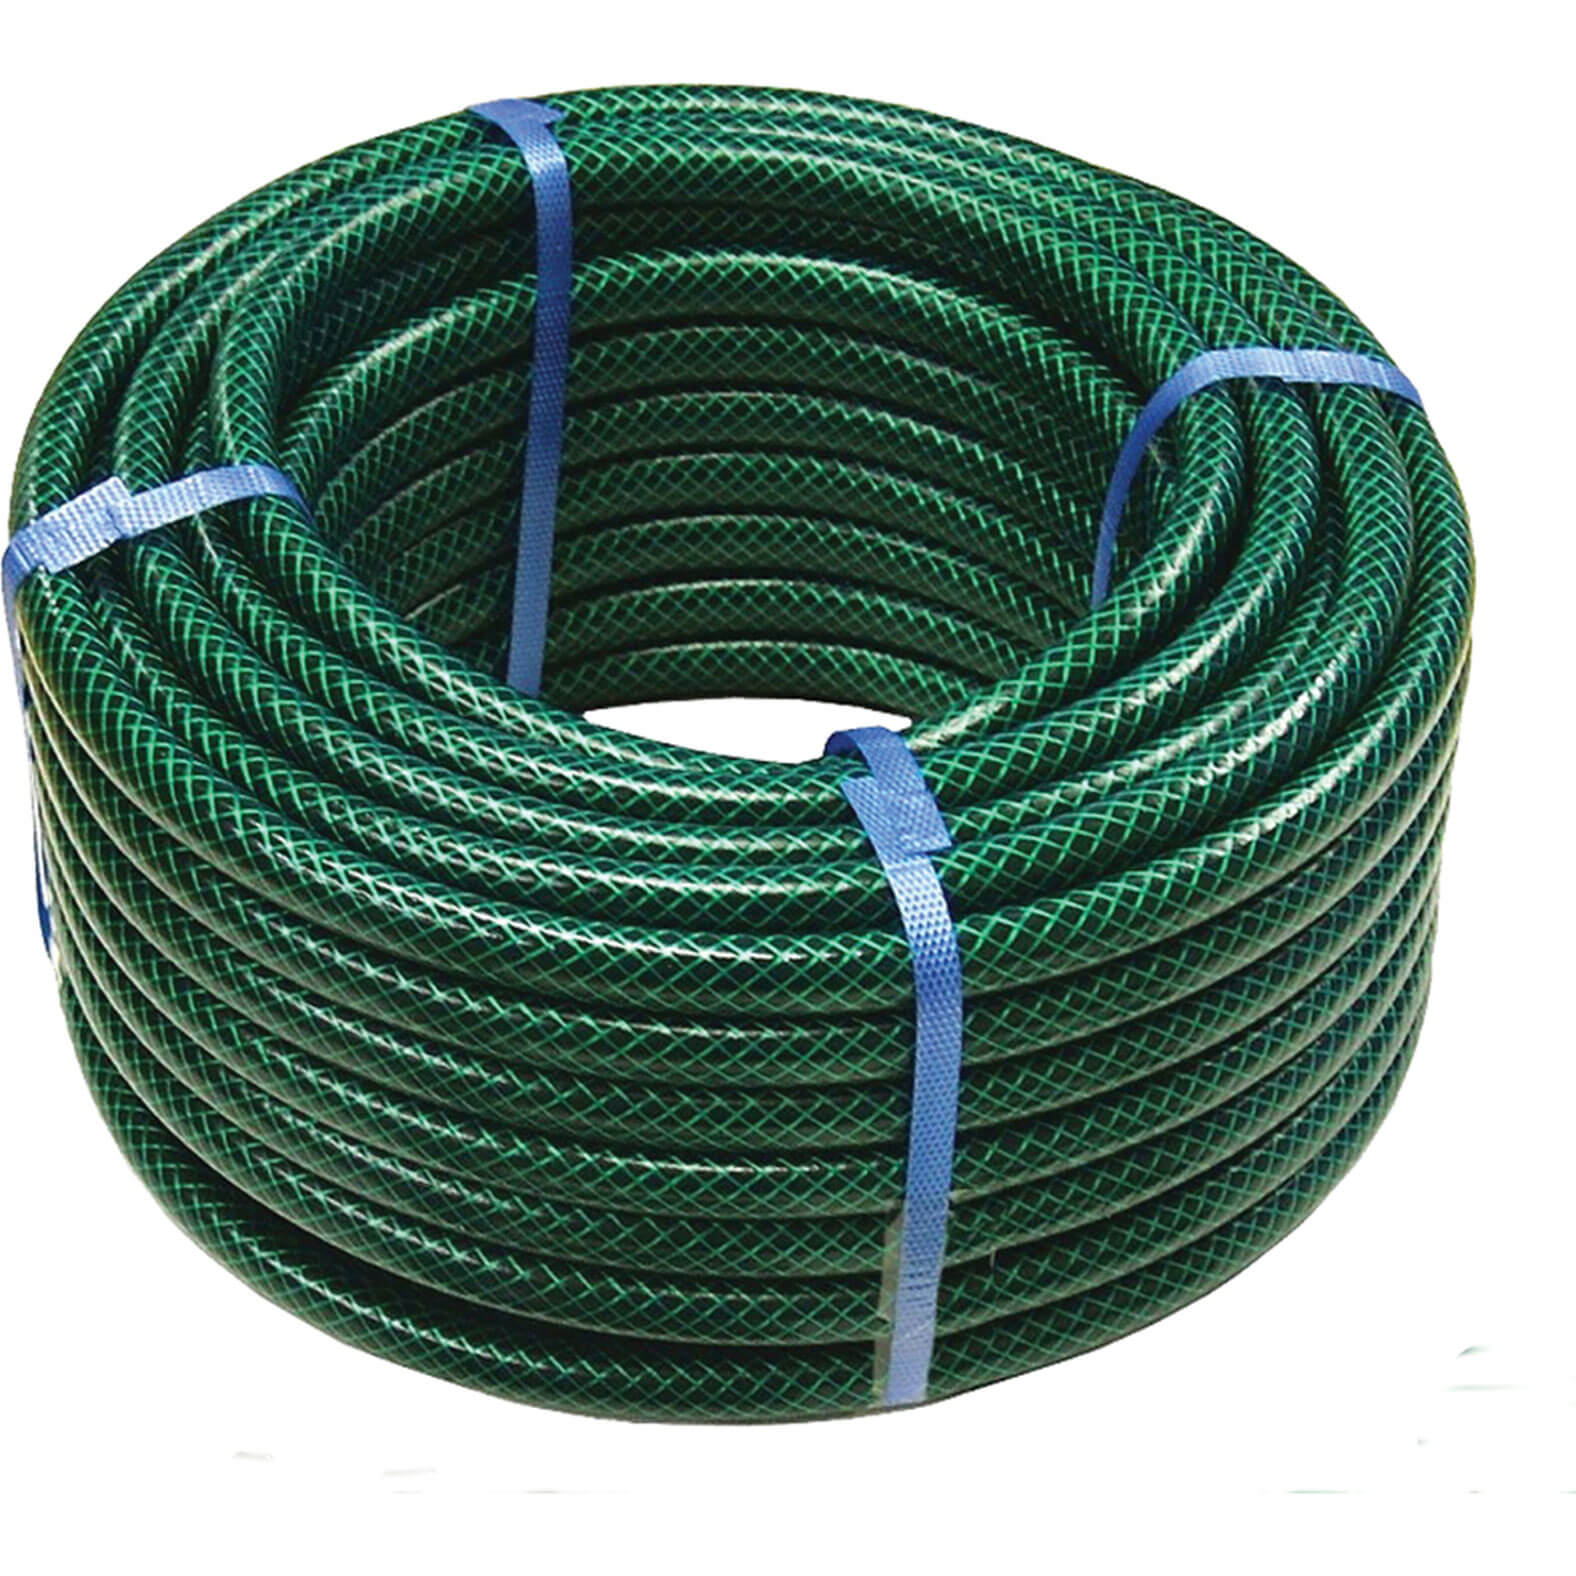 Image of Faithfull PVC Reinforced Garden Hose Pipe 1/2" / 12.5mm 50m Green